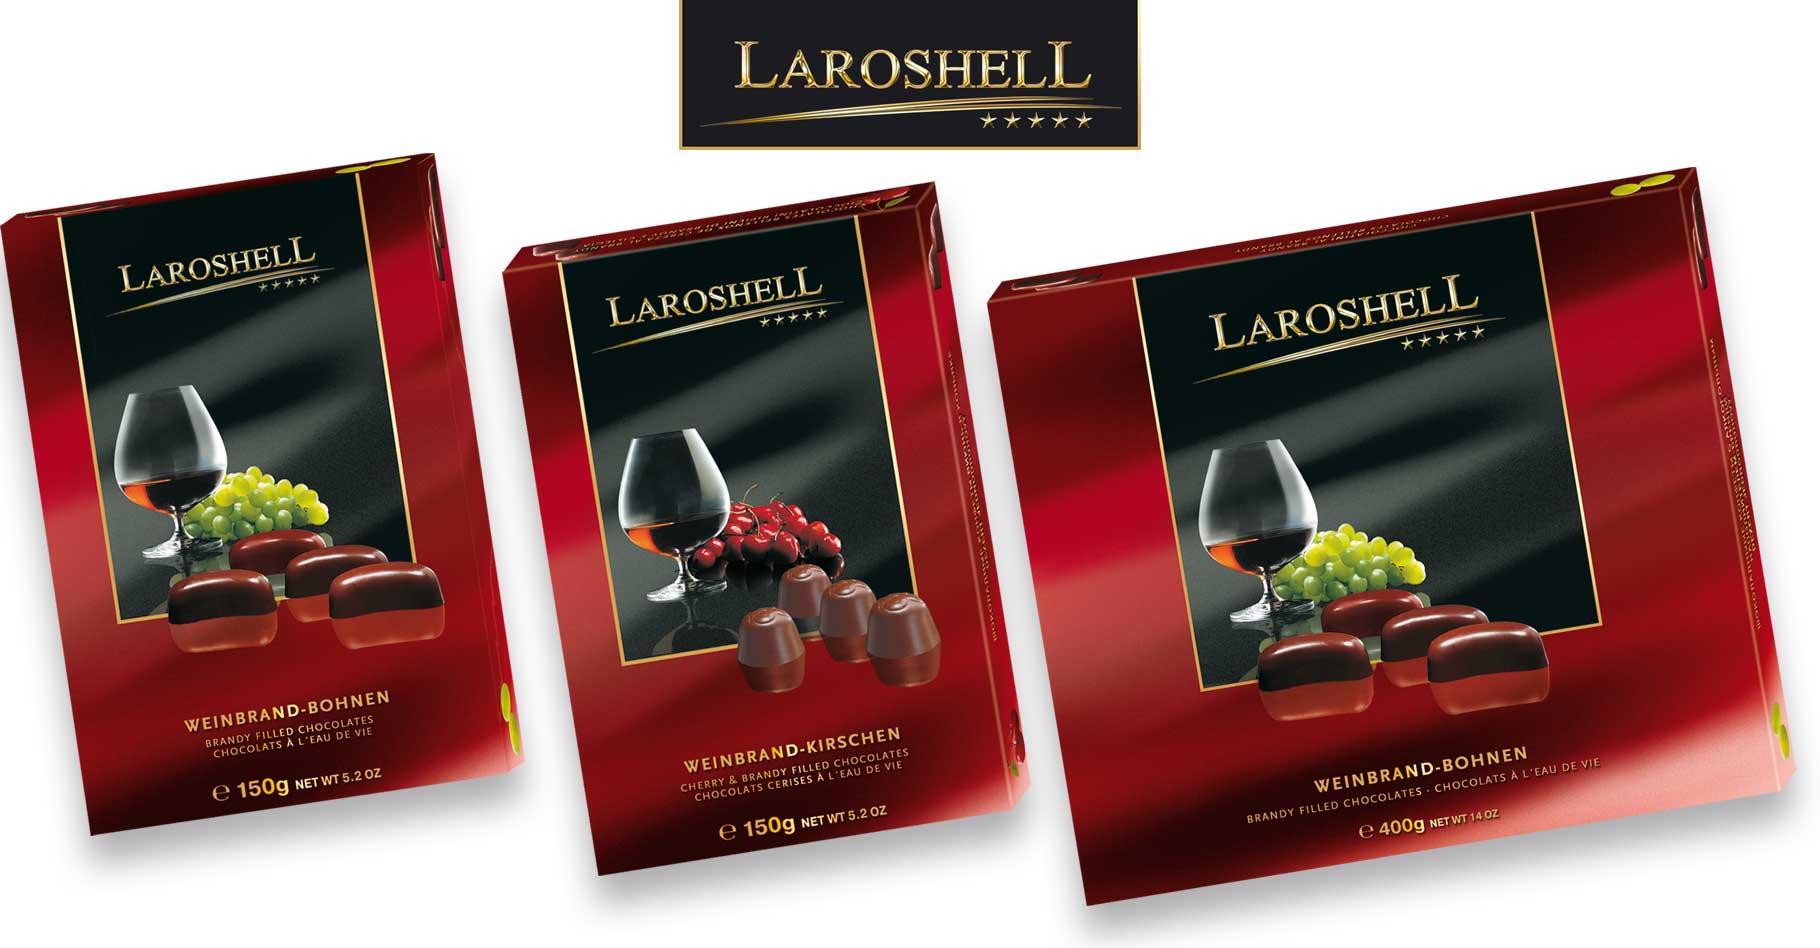 Relaunch of the international brand Laroshell